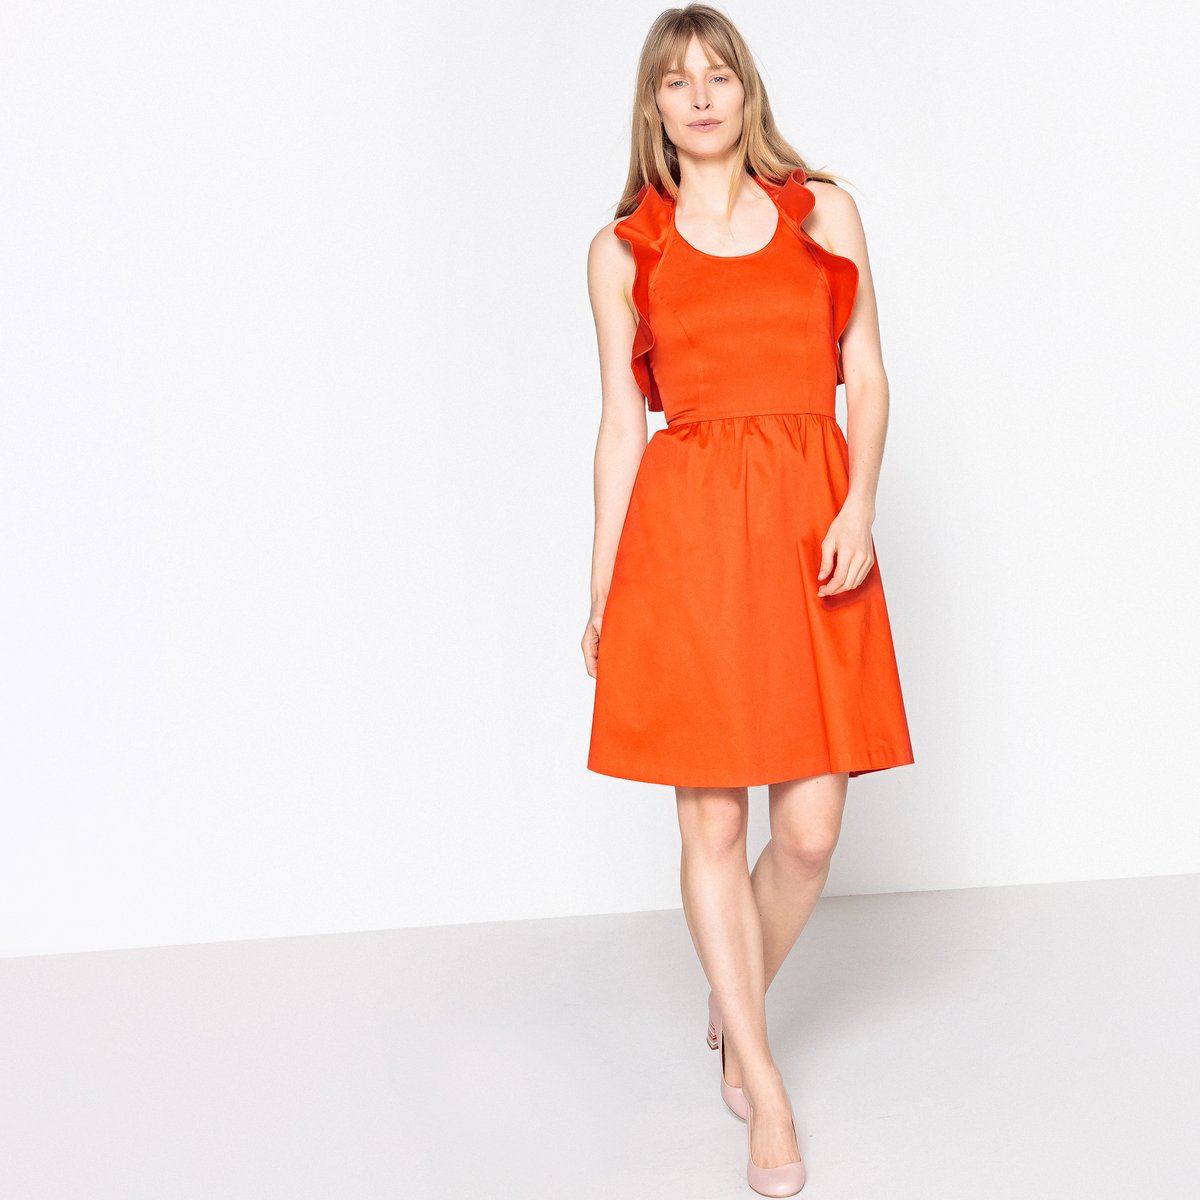 Платье La Redoute Расклешенное с открытой спинкой и воланами 44 (FR) - 50 (RUS) оранжевый, размер 44 (FR) - 50 (RUS) Расклешенное с открытой спинкой и воланами 44 (FR) - 50 (RUS) оранжевый - фото 2